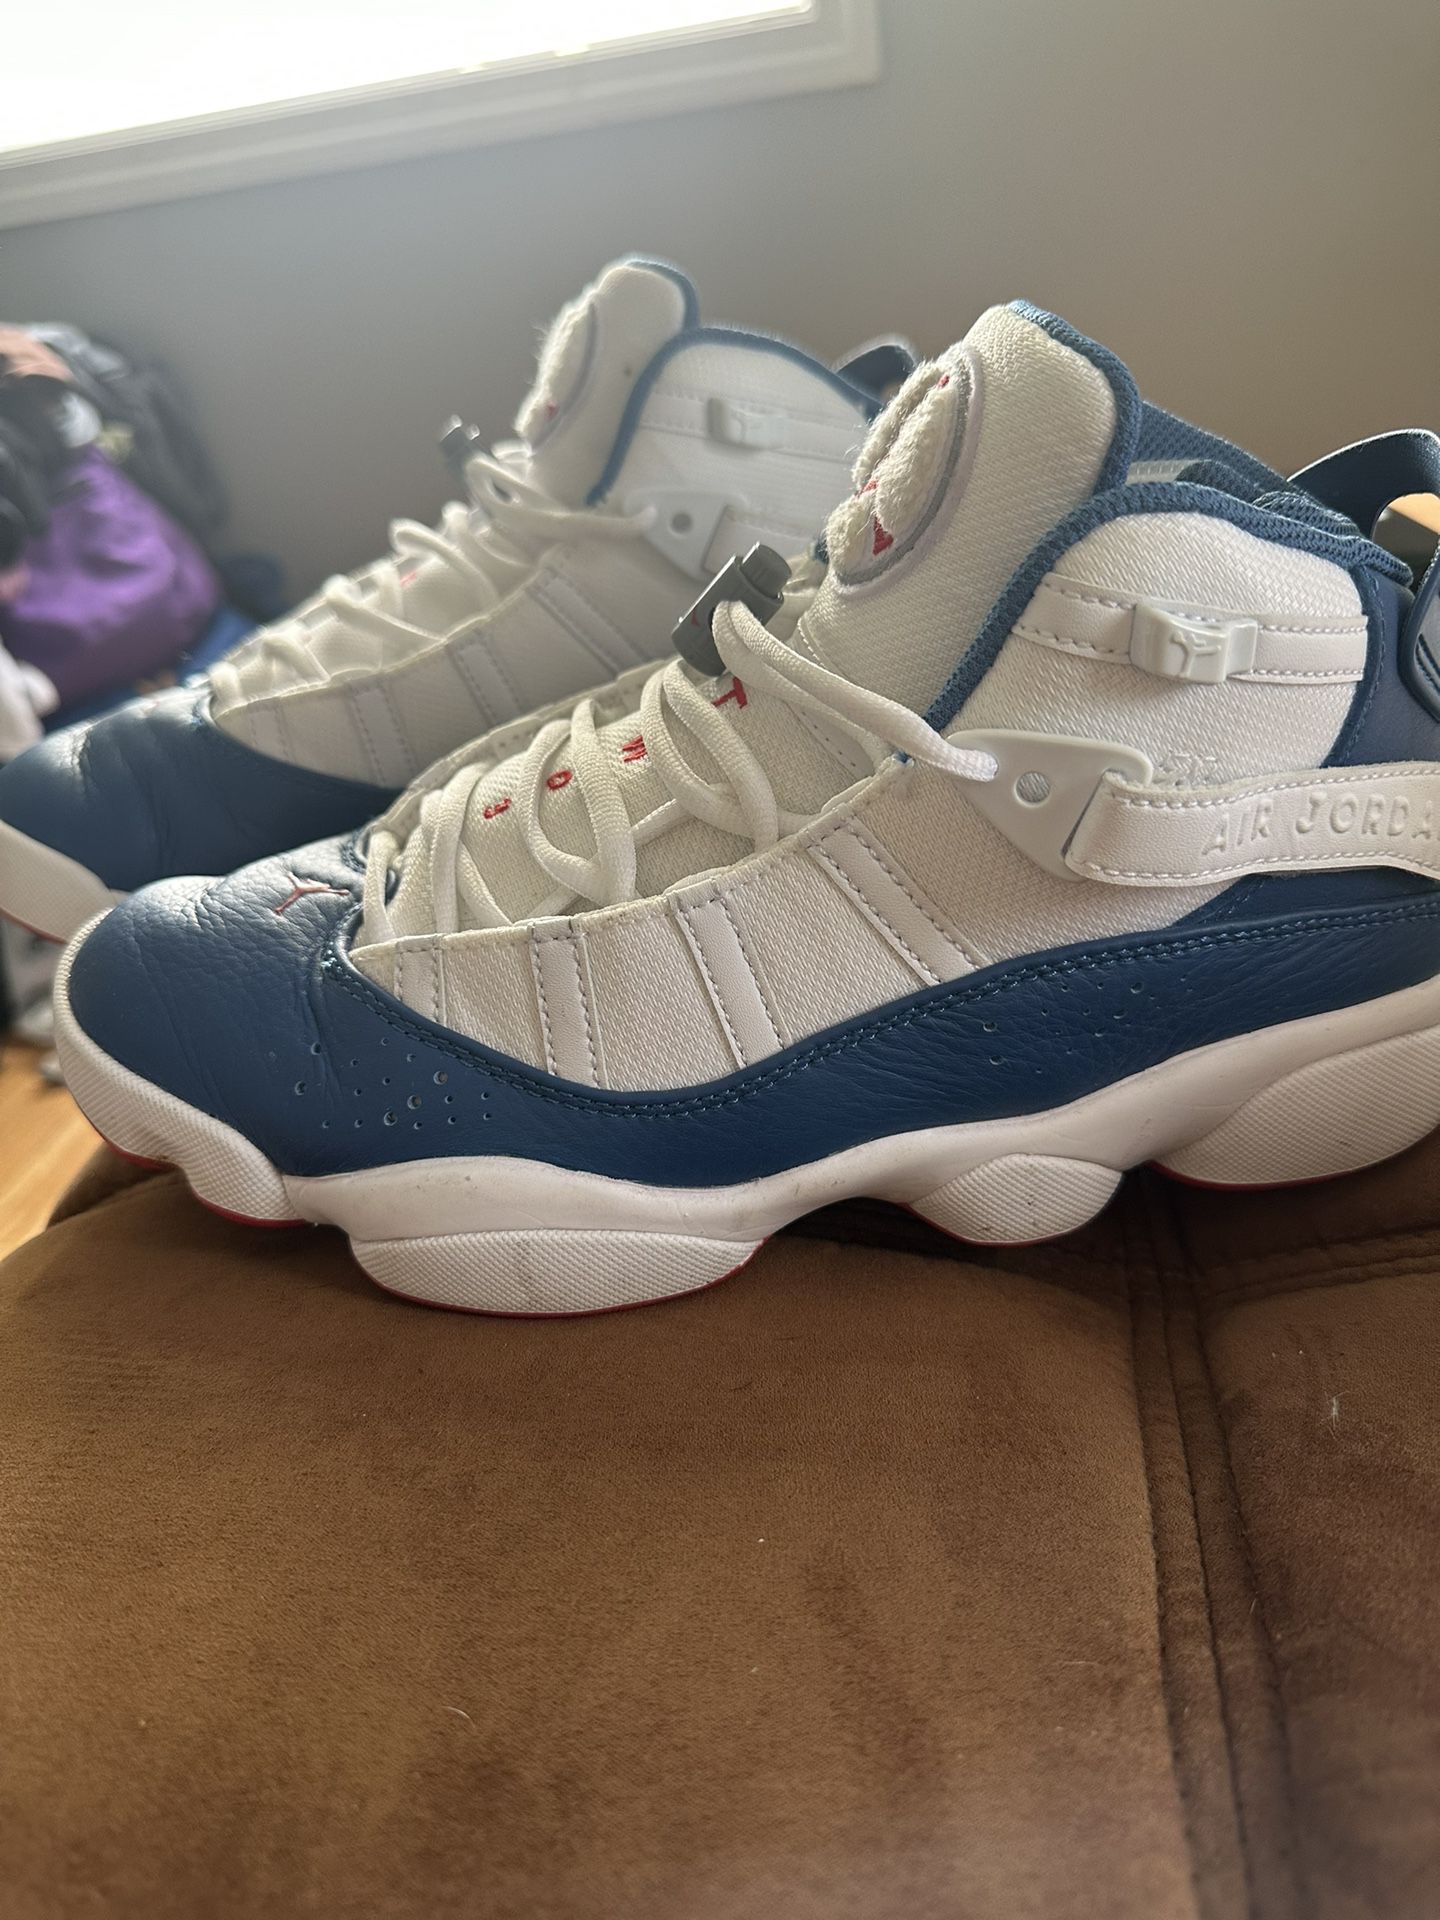 Size 8 Jordan’s 